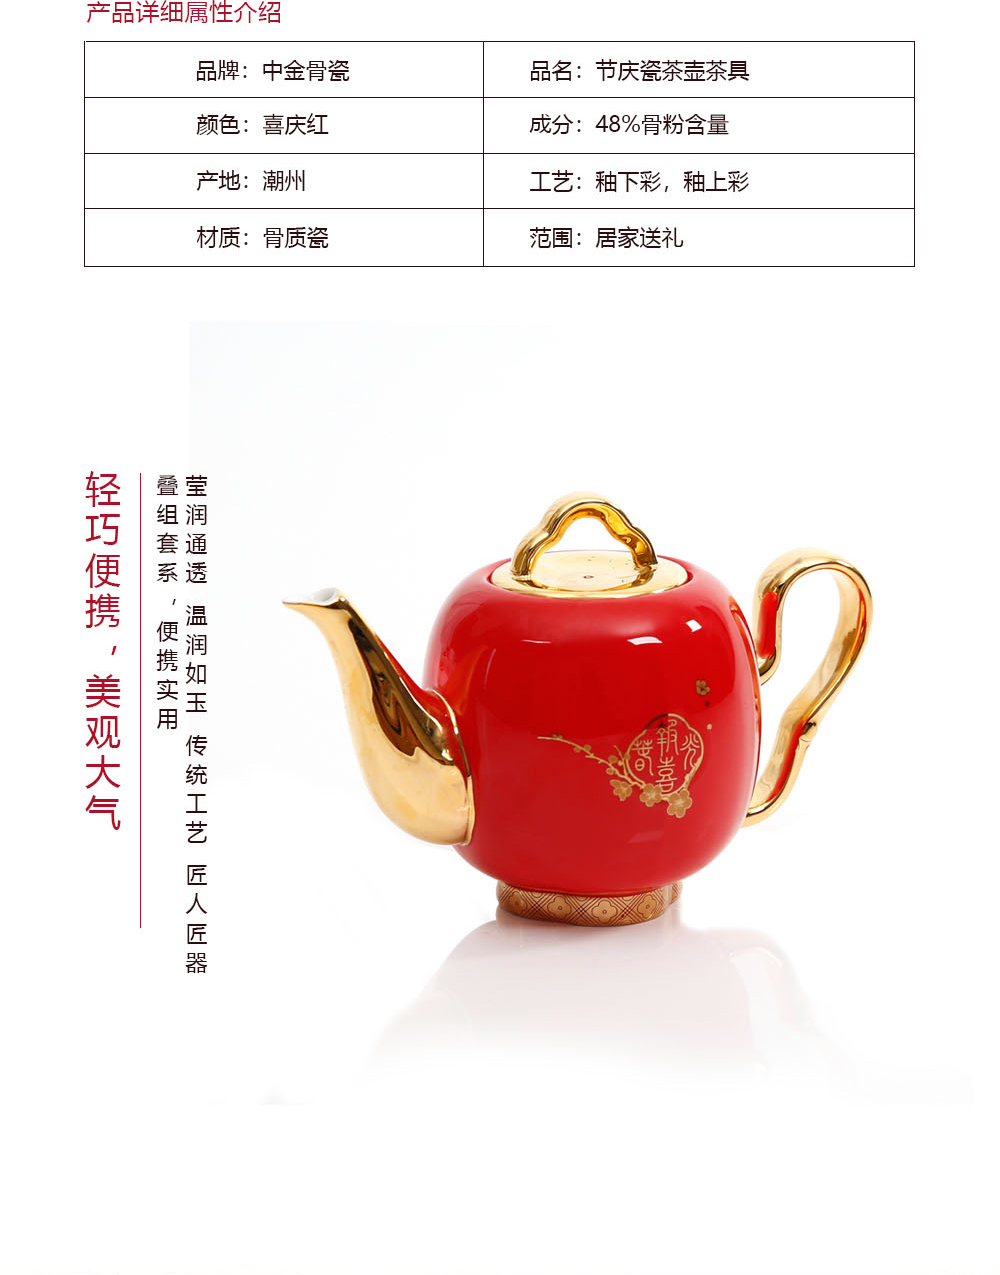 节庆系列模板9头中式茶具_03.jpg